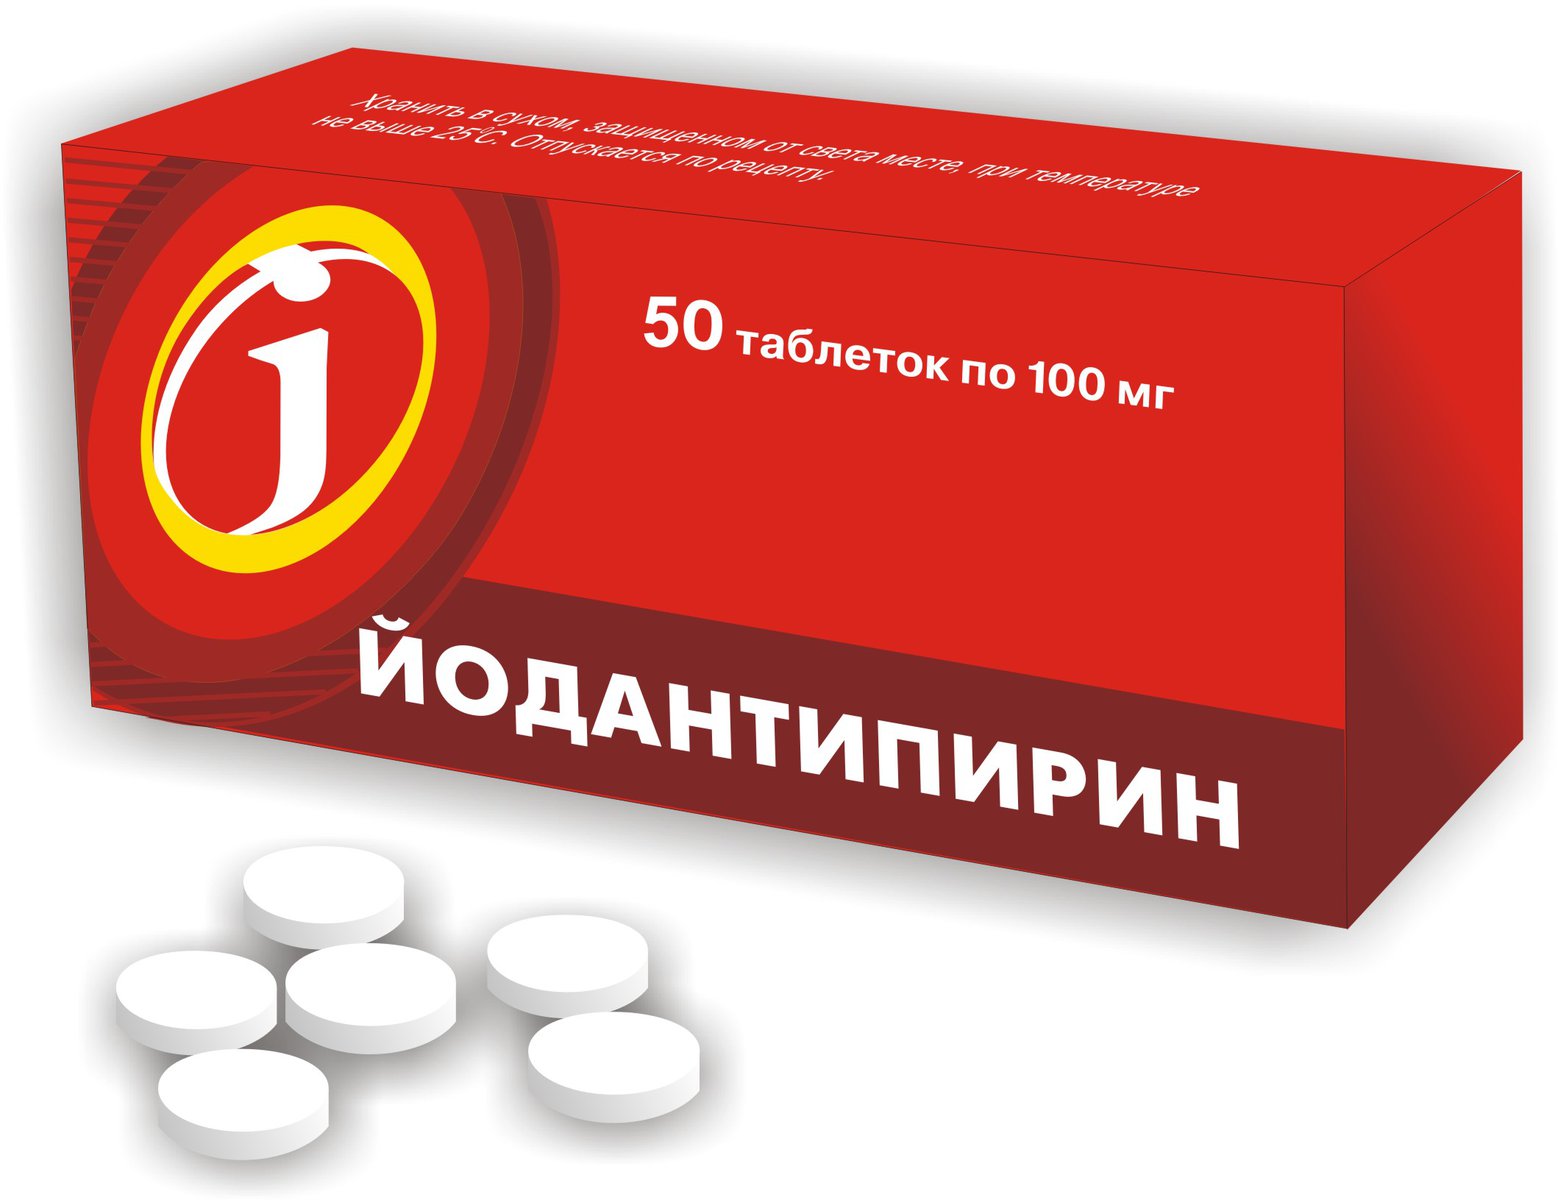 Йодантипирин (таблетки, 50 шт, 100 мг) - цена,  онлайн  .